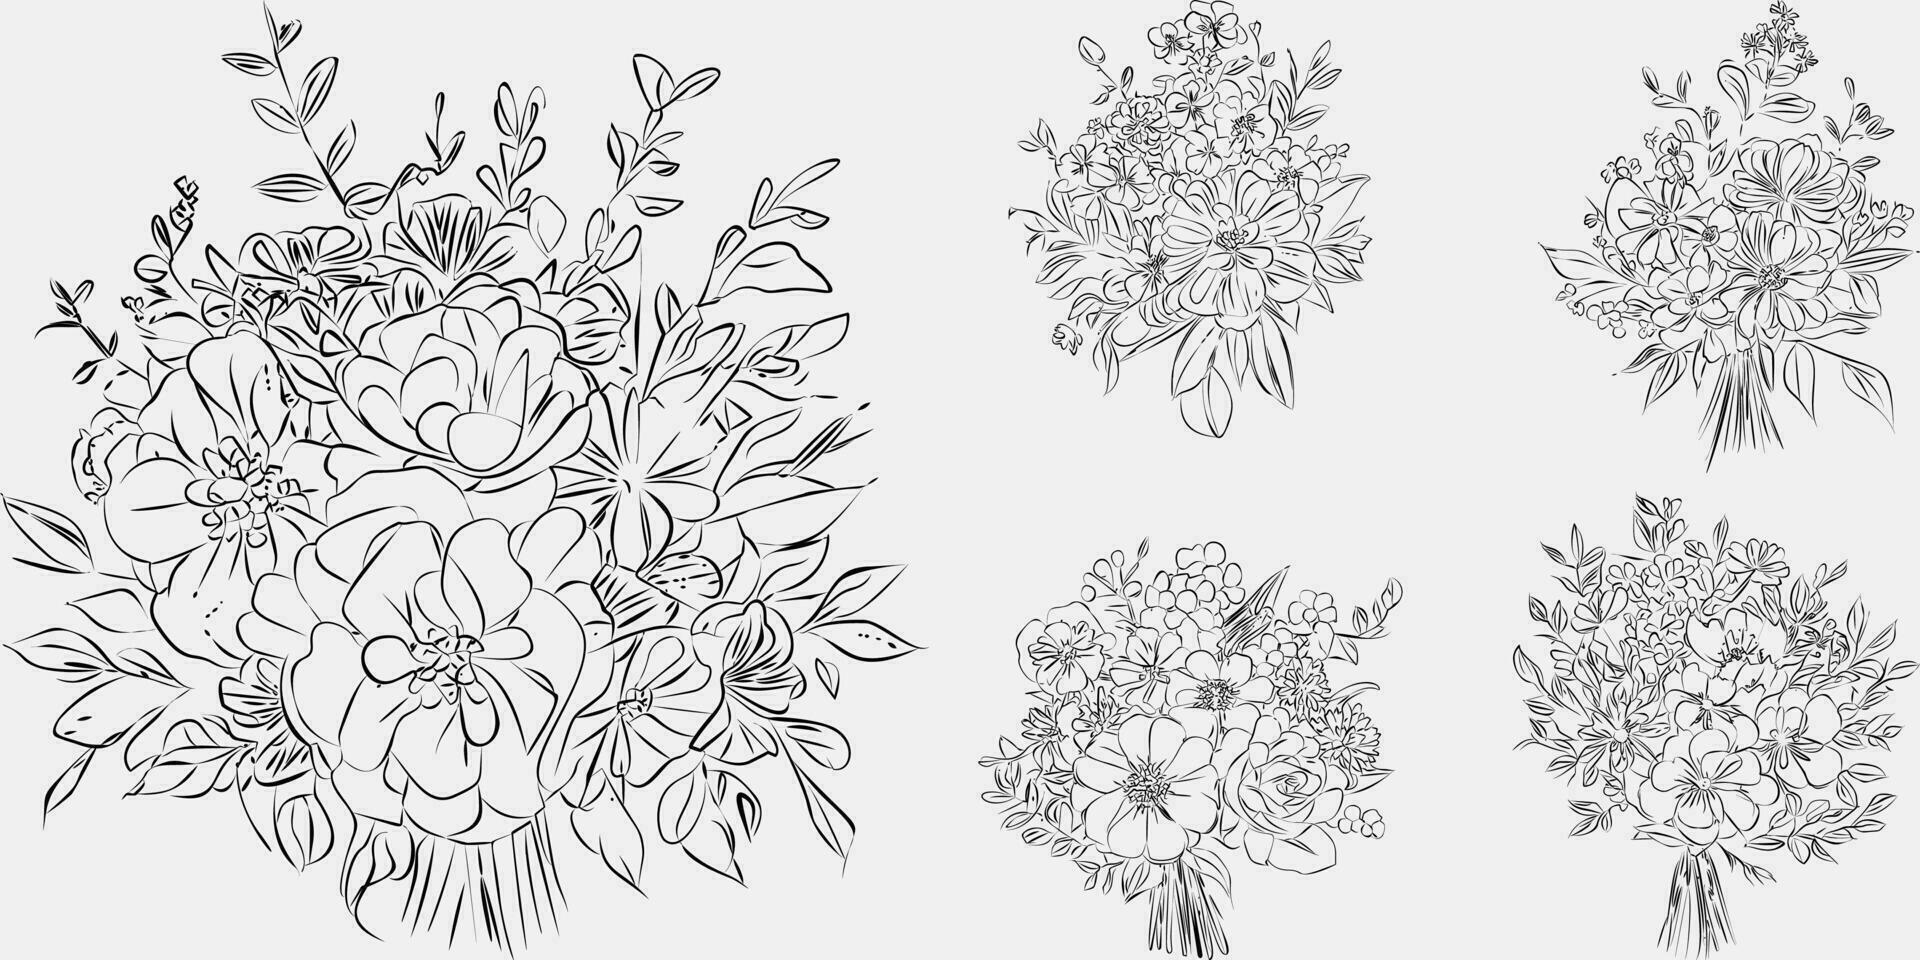 blomma bukett linje konst, svart och vit blommig uppsättning samling bunt ritad för hand, gren, lövverk, blad minimal antik retro samtida bläck teckning för dekor bröllop inbjudan och affisch kort. vektor